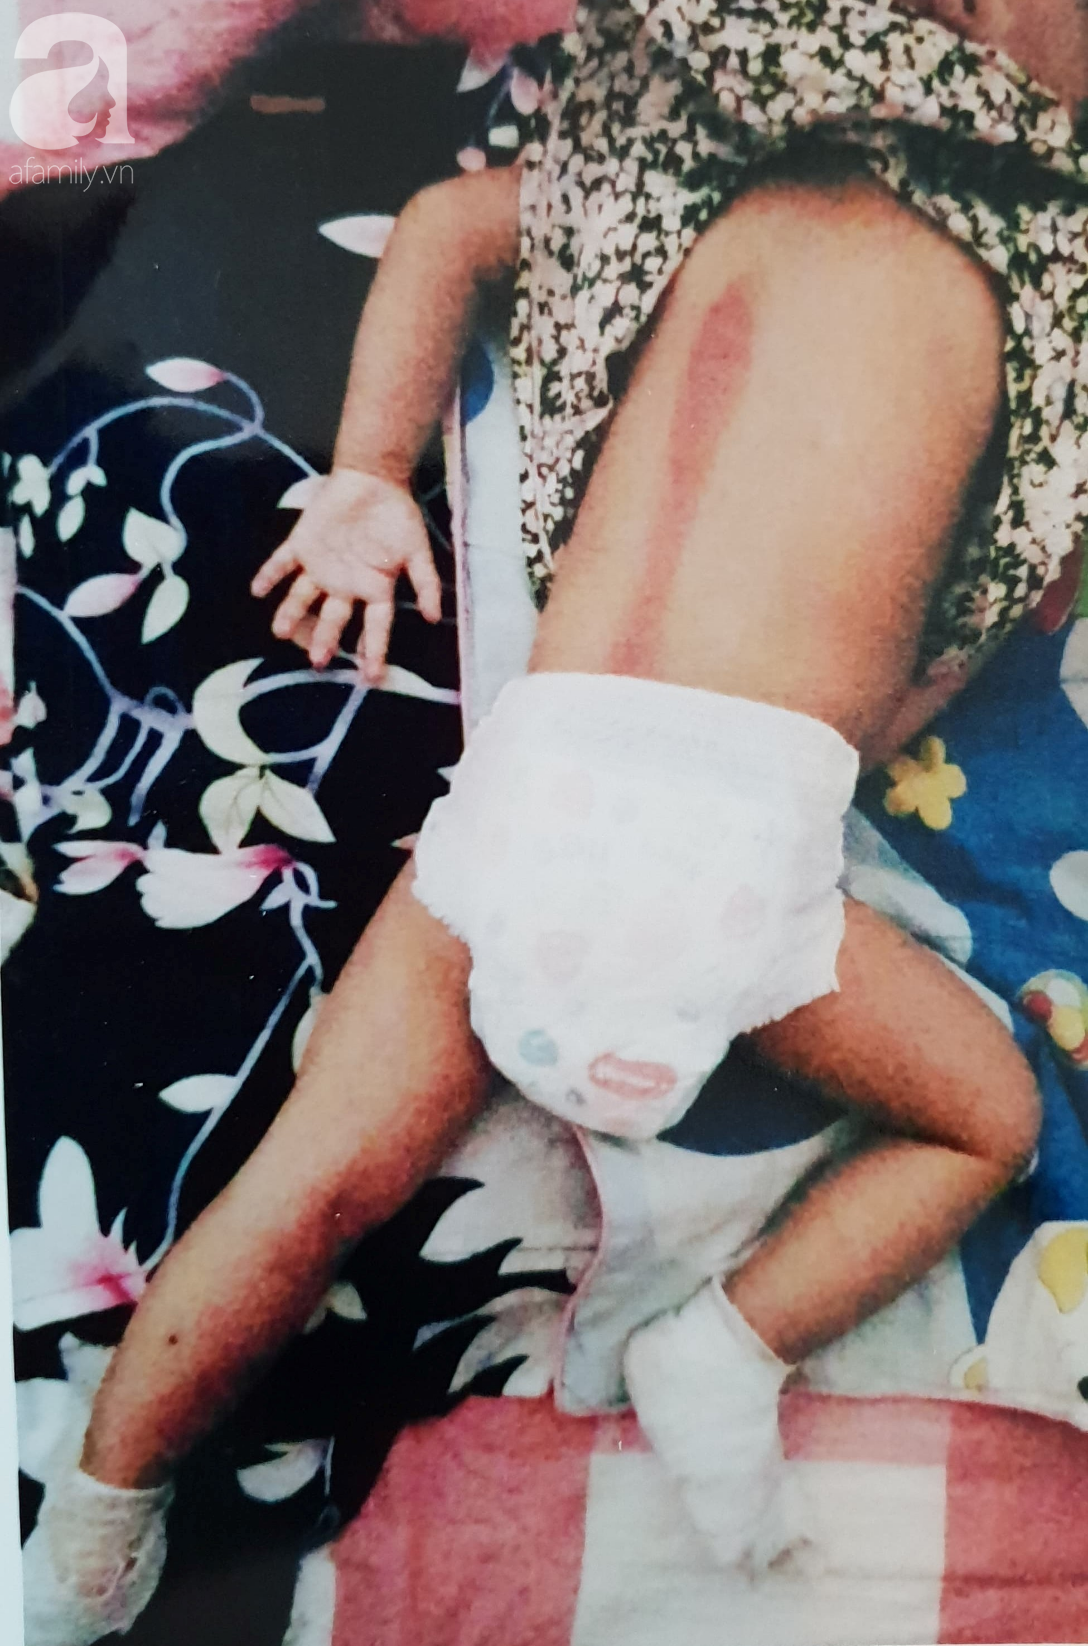 Cơ sở giữ trẻ lên tiếng việc bé gái 18 tháng tuổi bị phỏng ở chân: Không ai nhúng chân bé vào nước sôi - Ảnh 4.